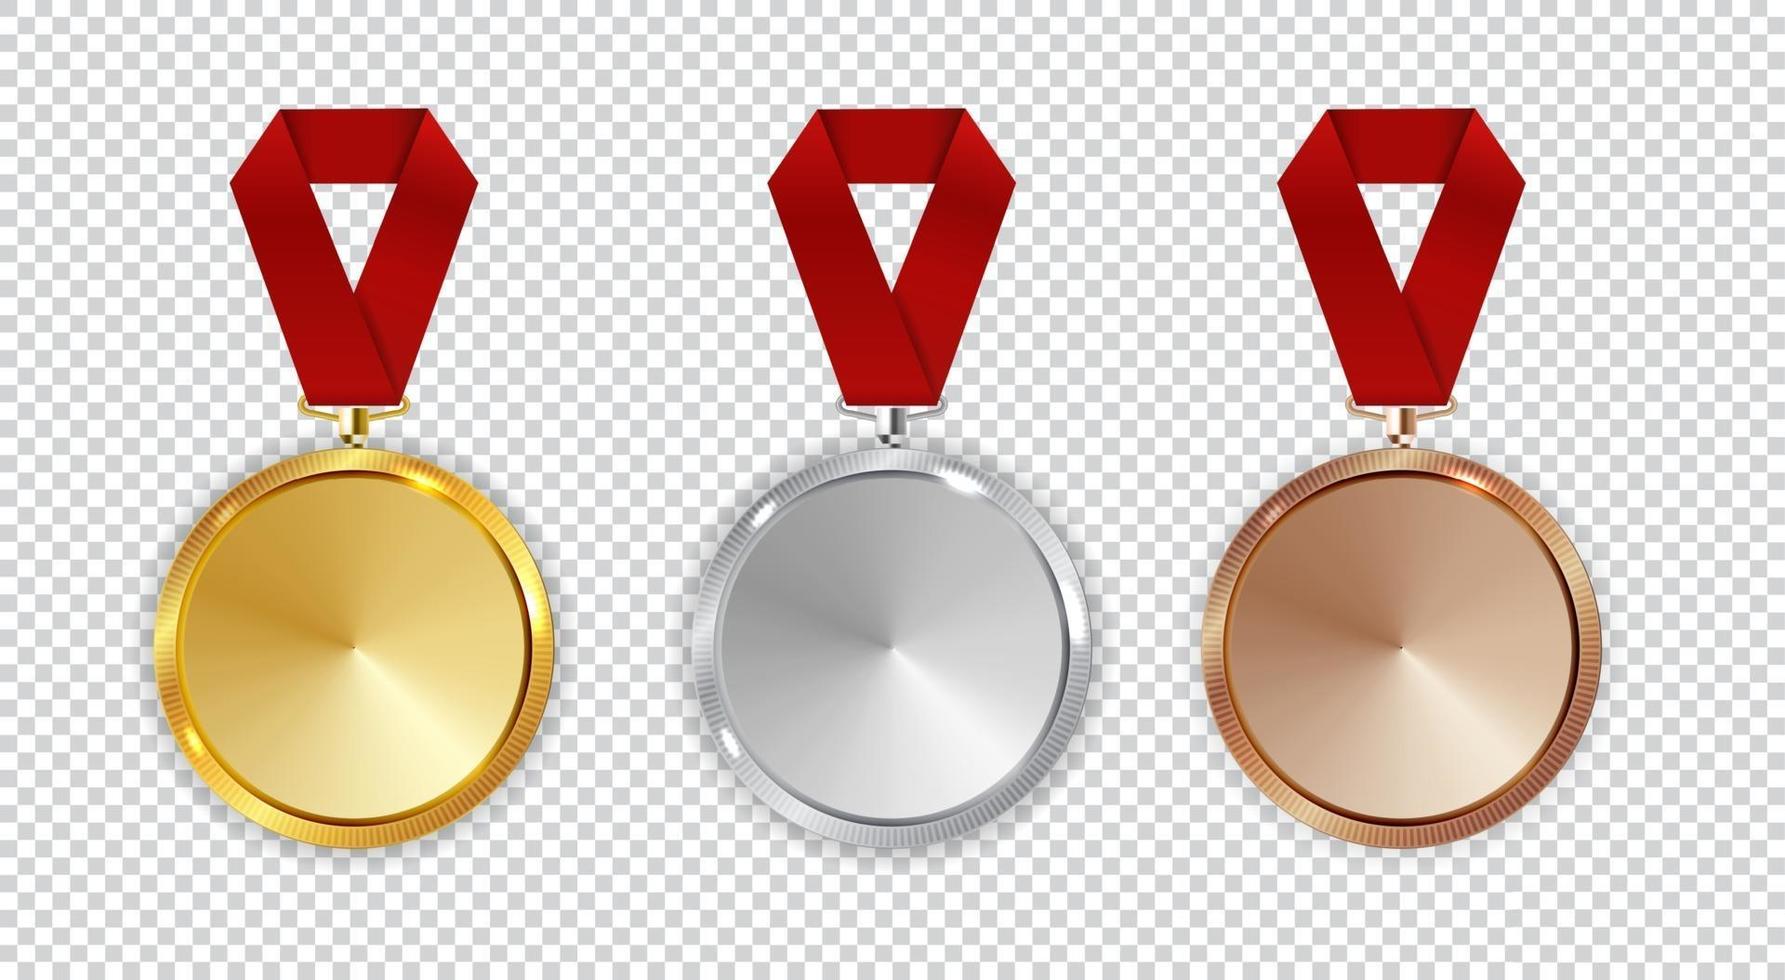 Champion Gold-, Silber- und Bronzemedaillensymbol zuerst unterschreiben, vektor